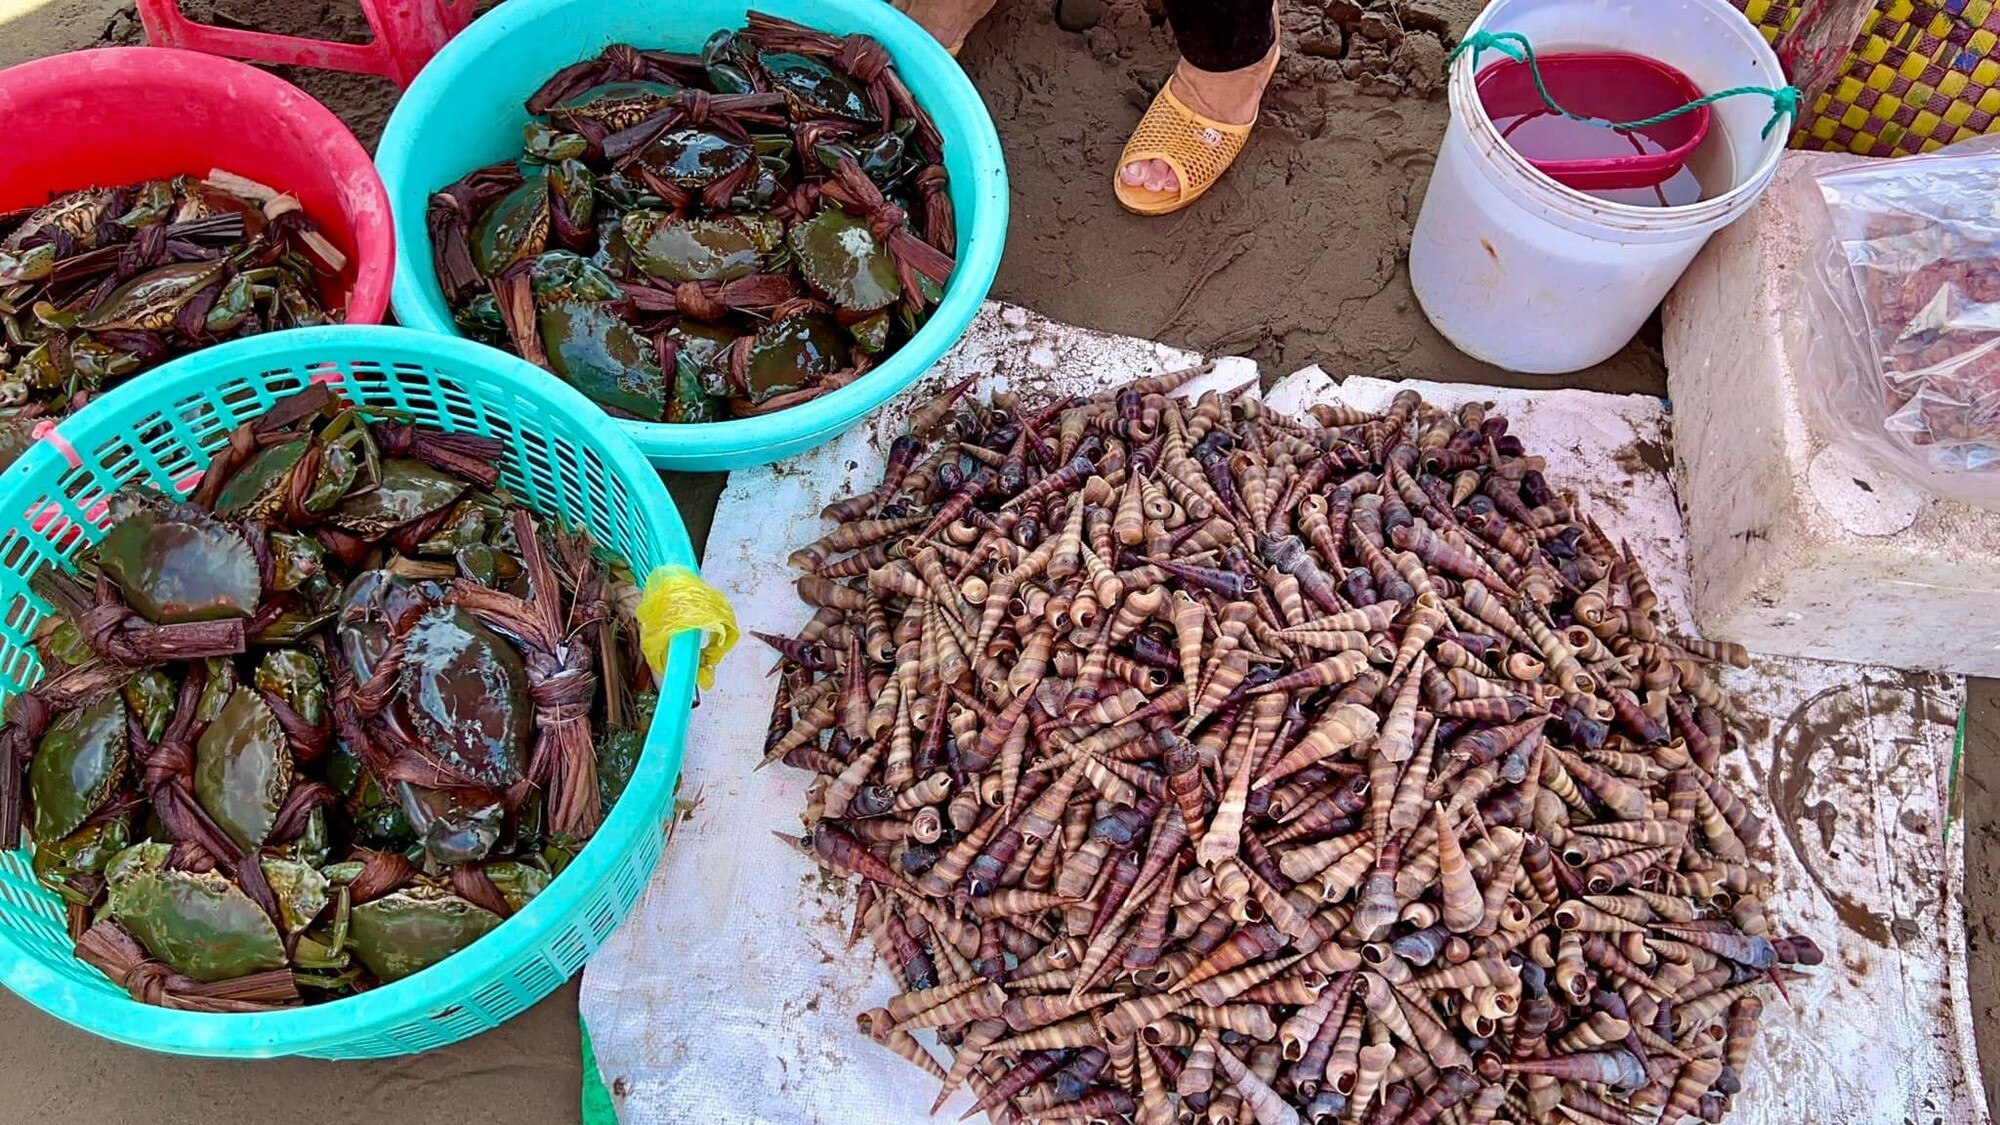 Chợ biển ở một huyện của Bến Tre họp ngay mép sóng, mua bán la liệt tôm, cua, cá, ốc ngon, lạ mắt- Ảnh 4.